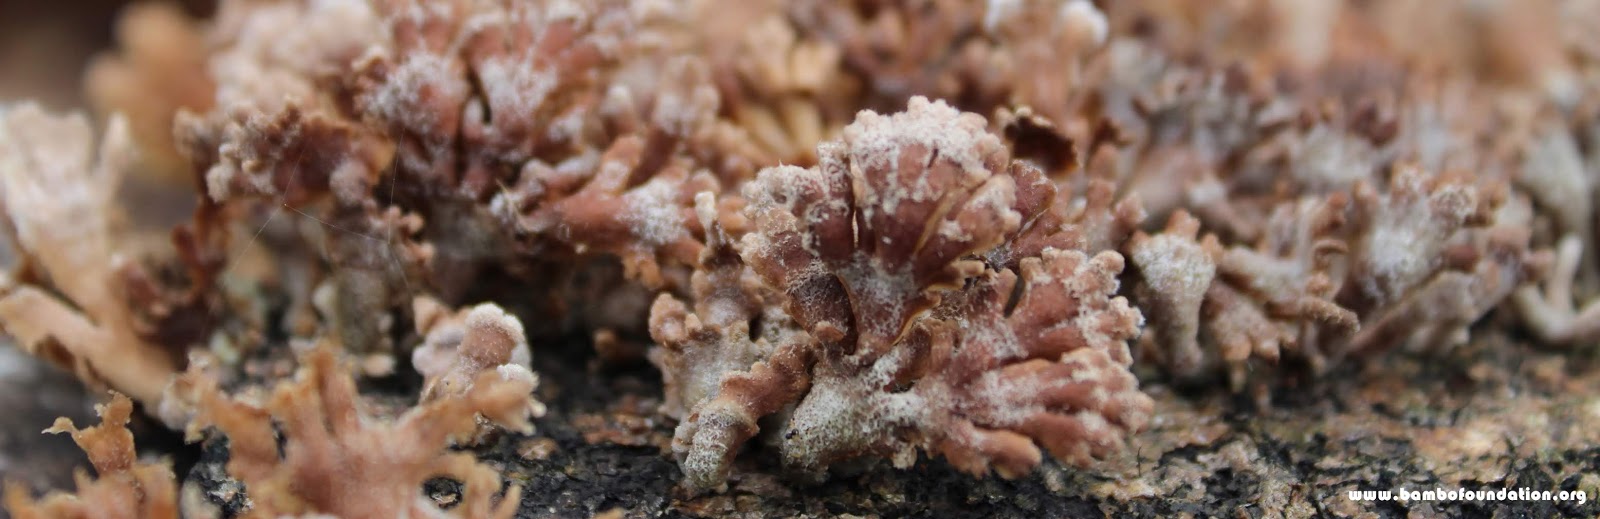 Koral itu mirip jamur yang sesungguhnya